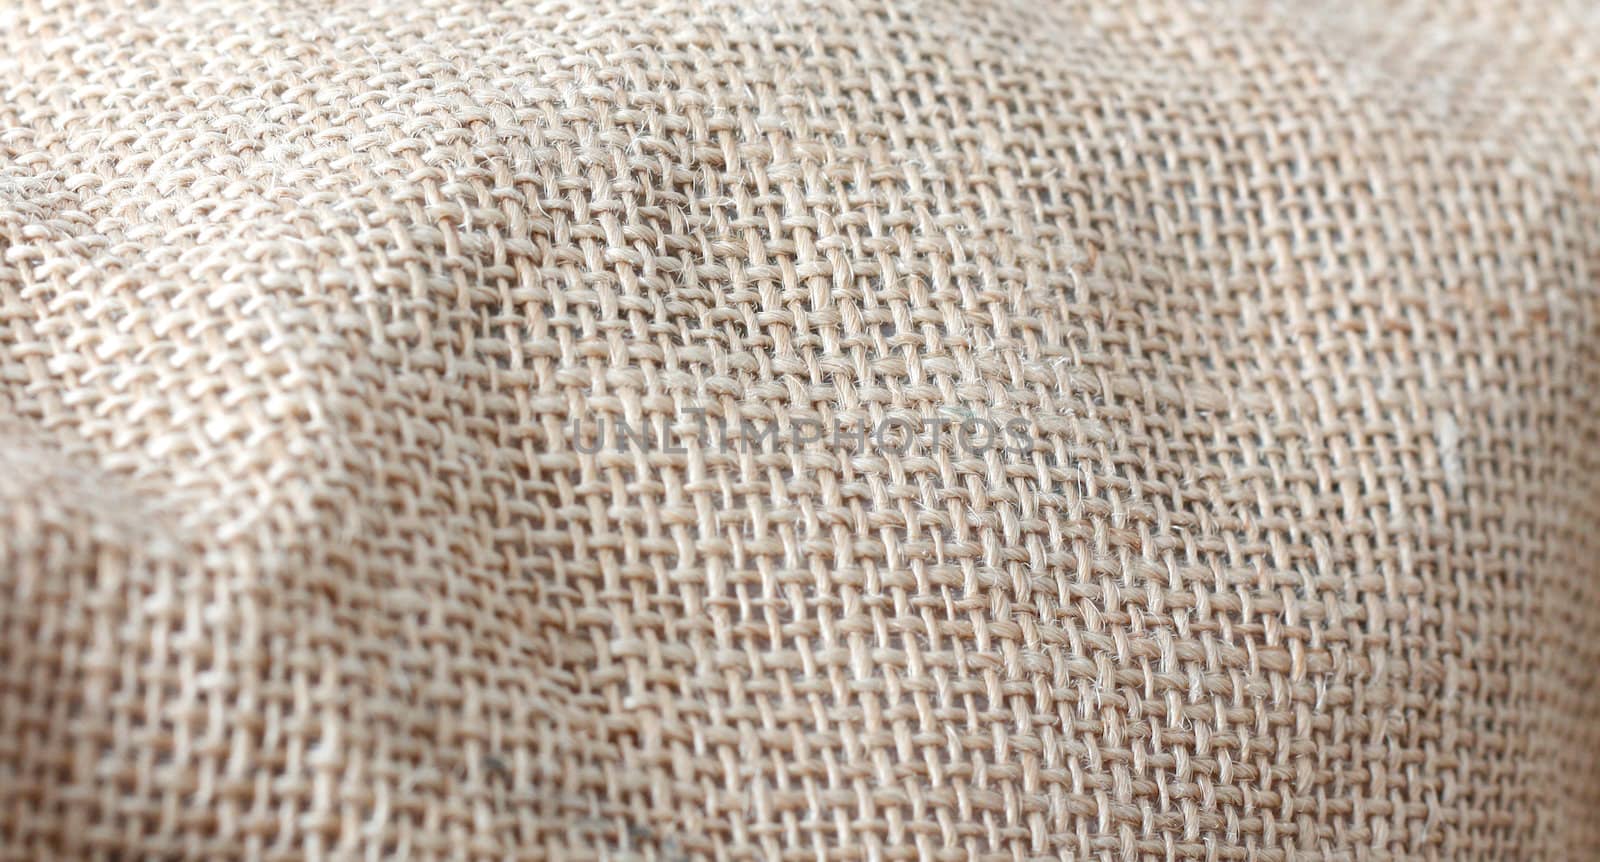 Coffee bag textile by leeser